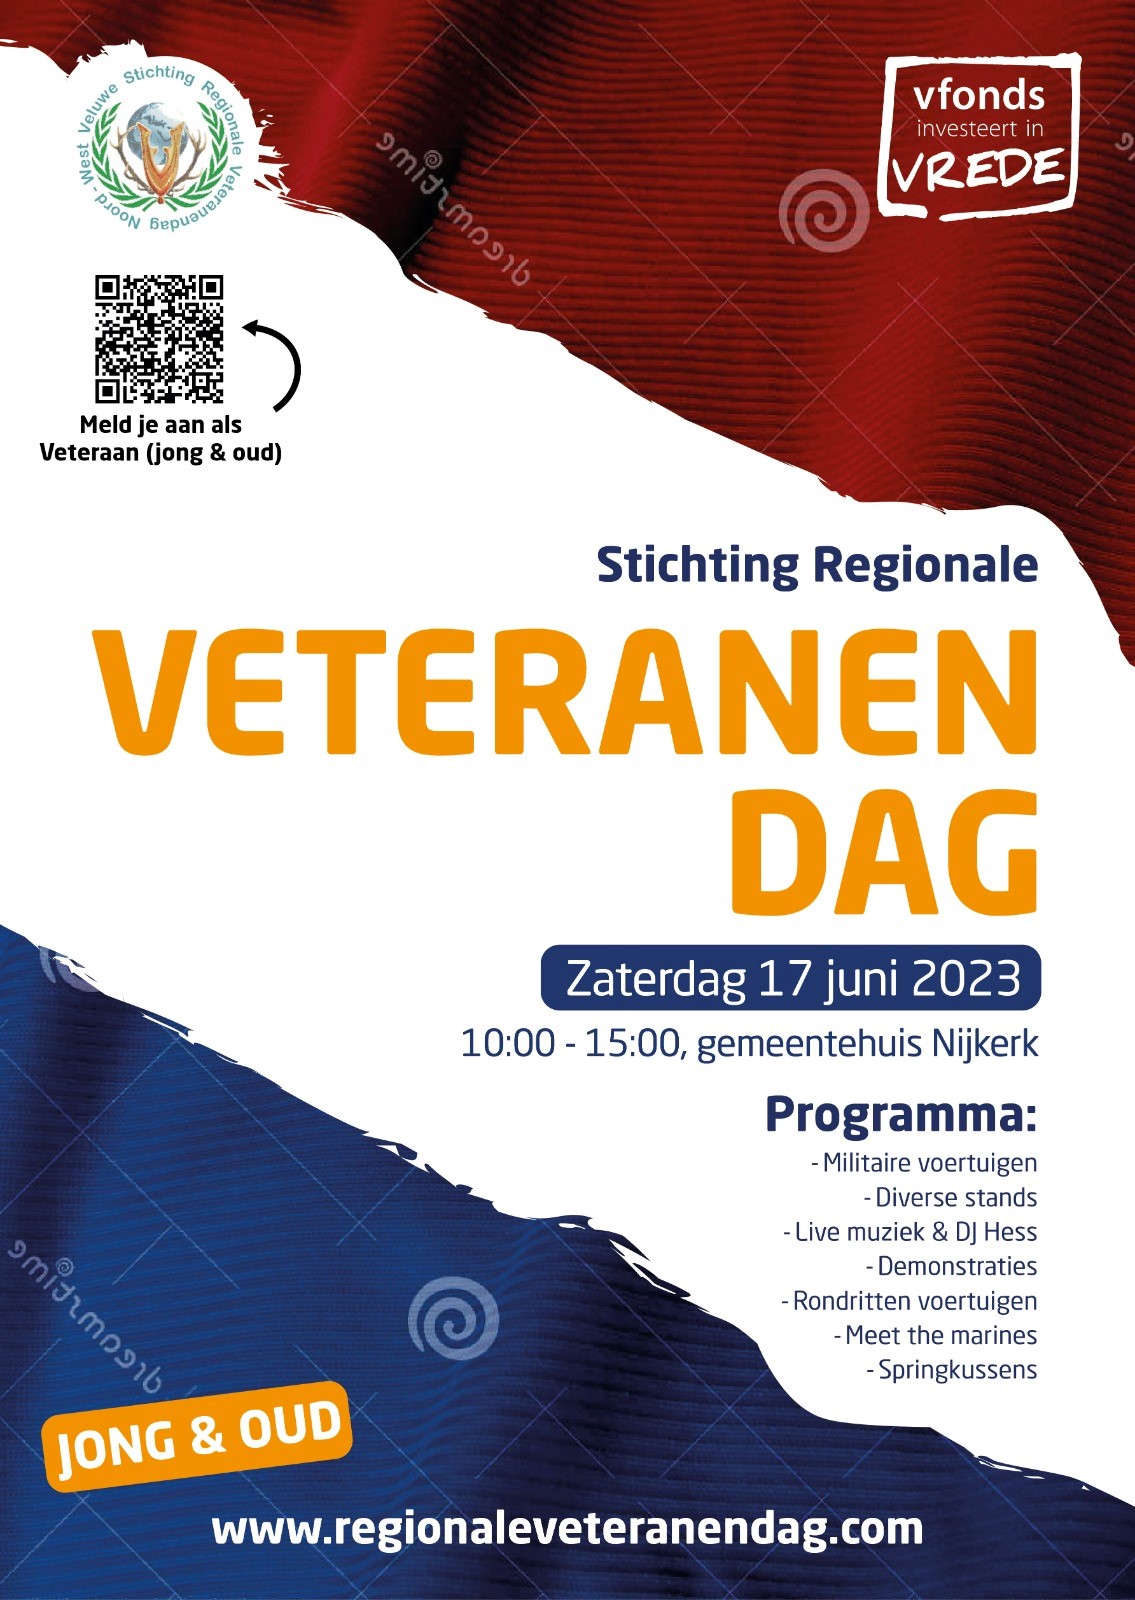 Bezoek de 16e Regionale Veteranendag op het parkeerterrein van het stadhuis in Nijkerk